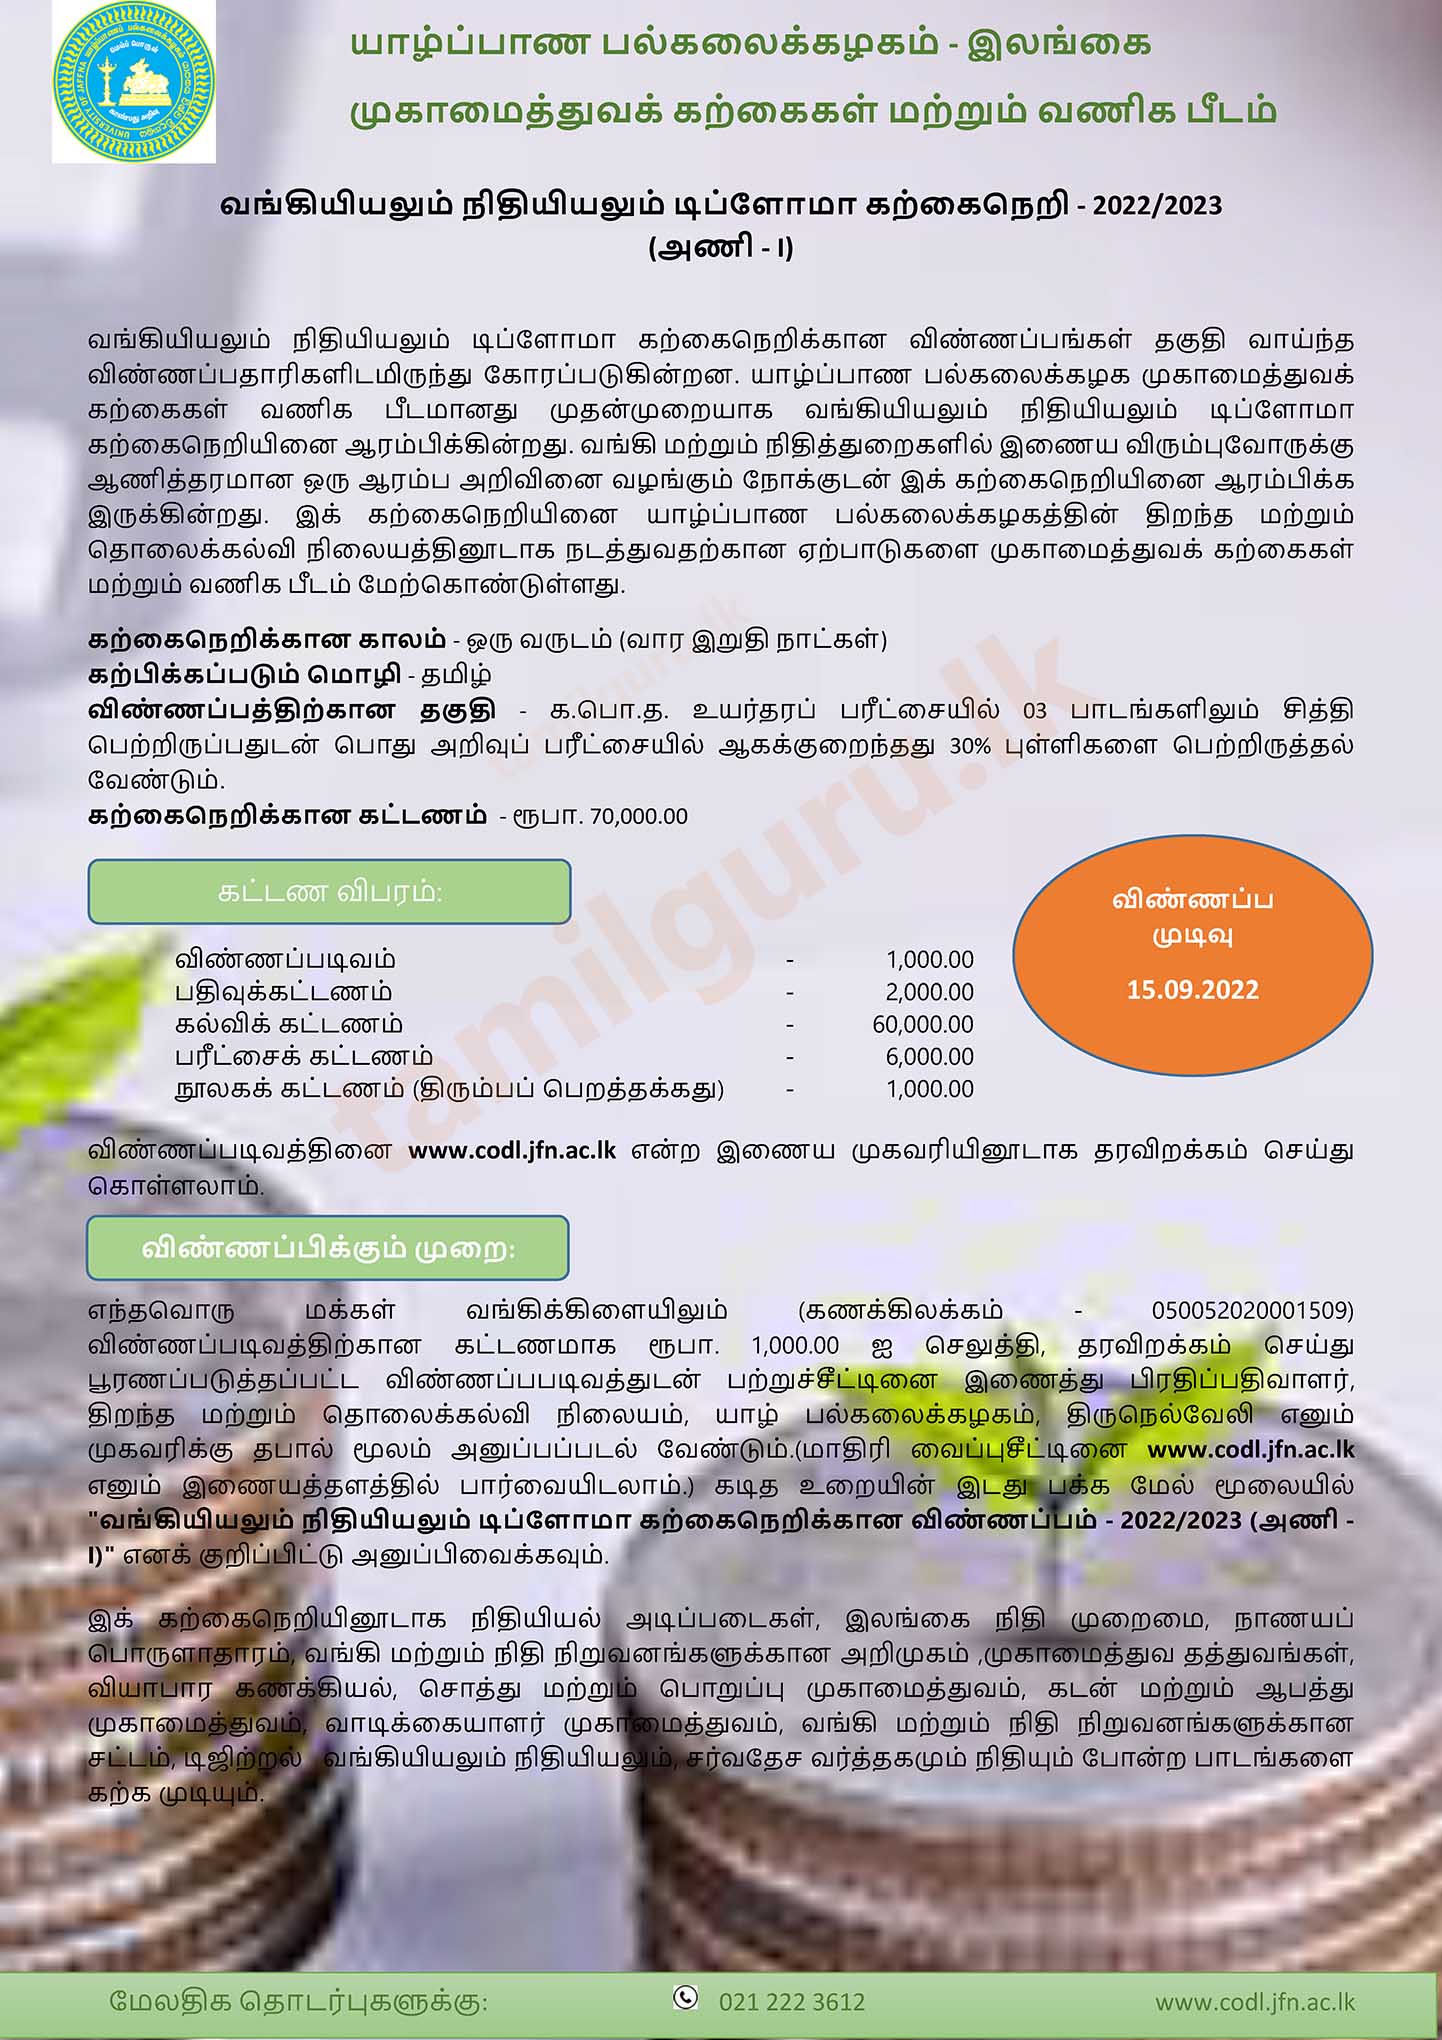 Diploma in Banking and Finance (2022/2023) - University of Jaffna / வங்கியியலும் நிதியியலும் டிப்ளோமா கற்கை நெறி - யாழ்ப்பாணப் பல்கலைக்கழகம்